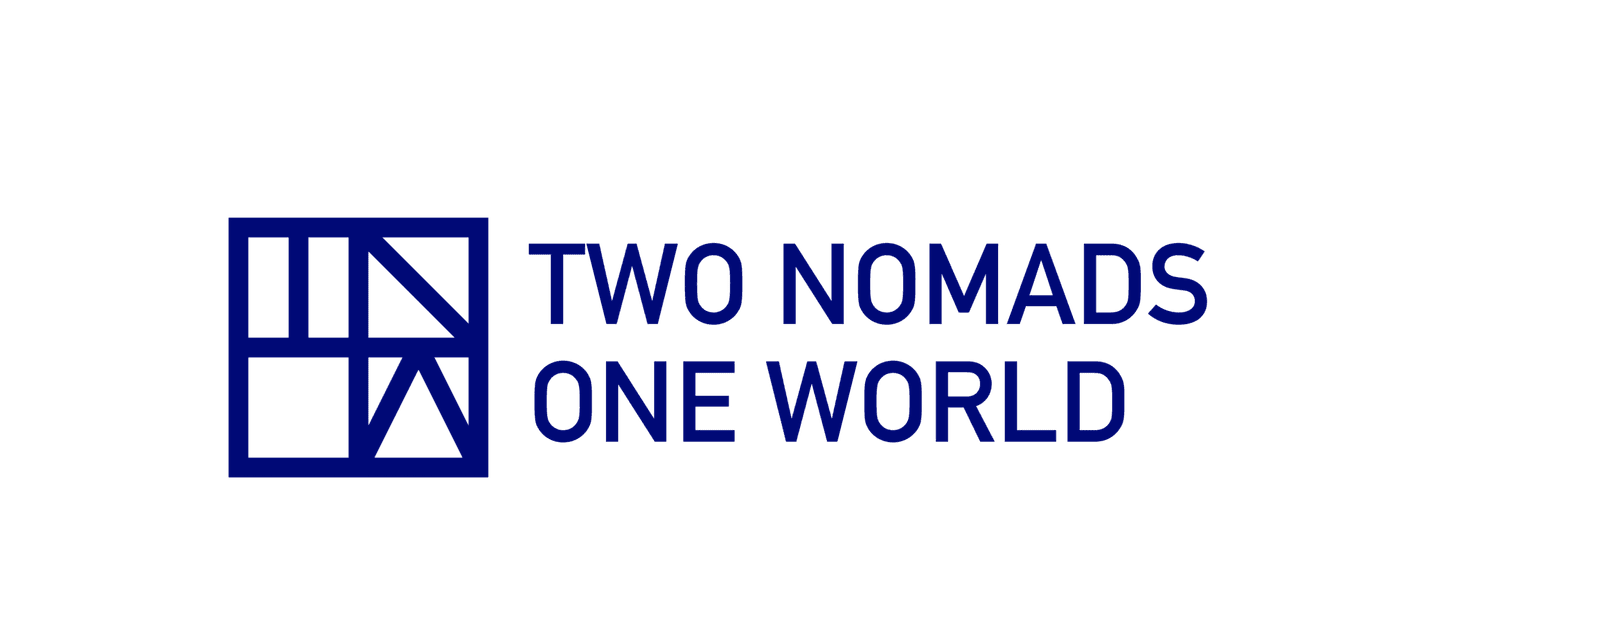 Two Nomads One World | 2N1W | Two Nomads One World